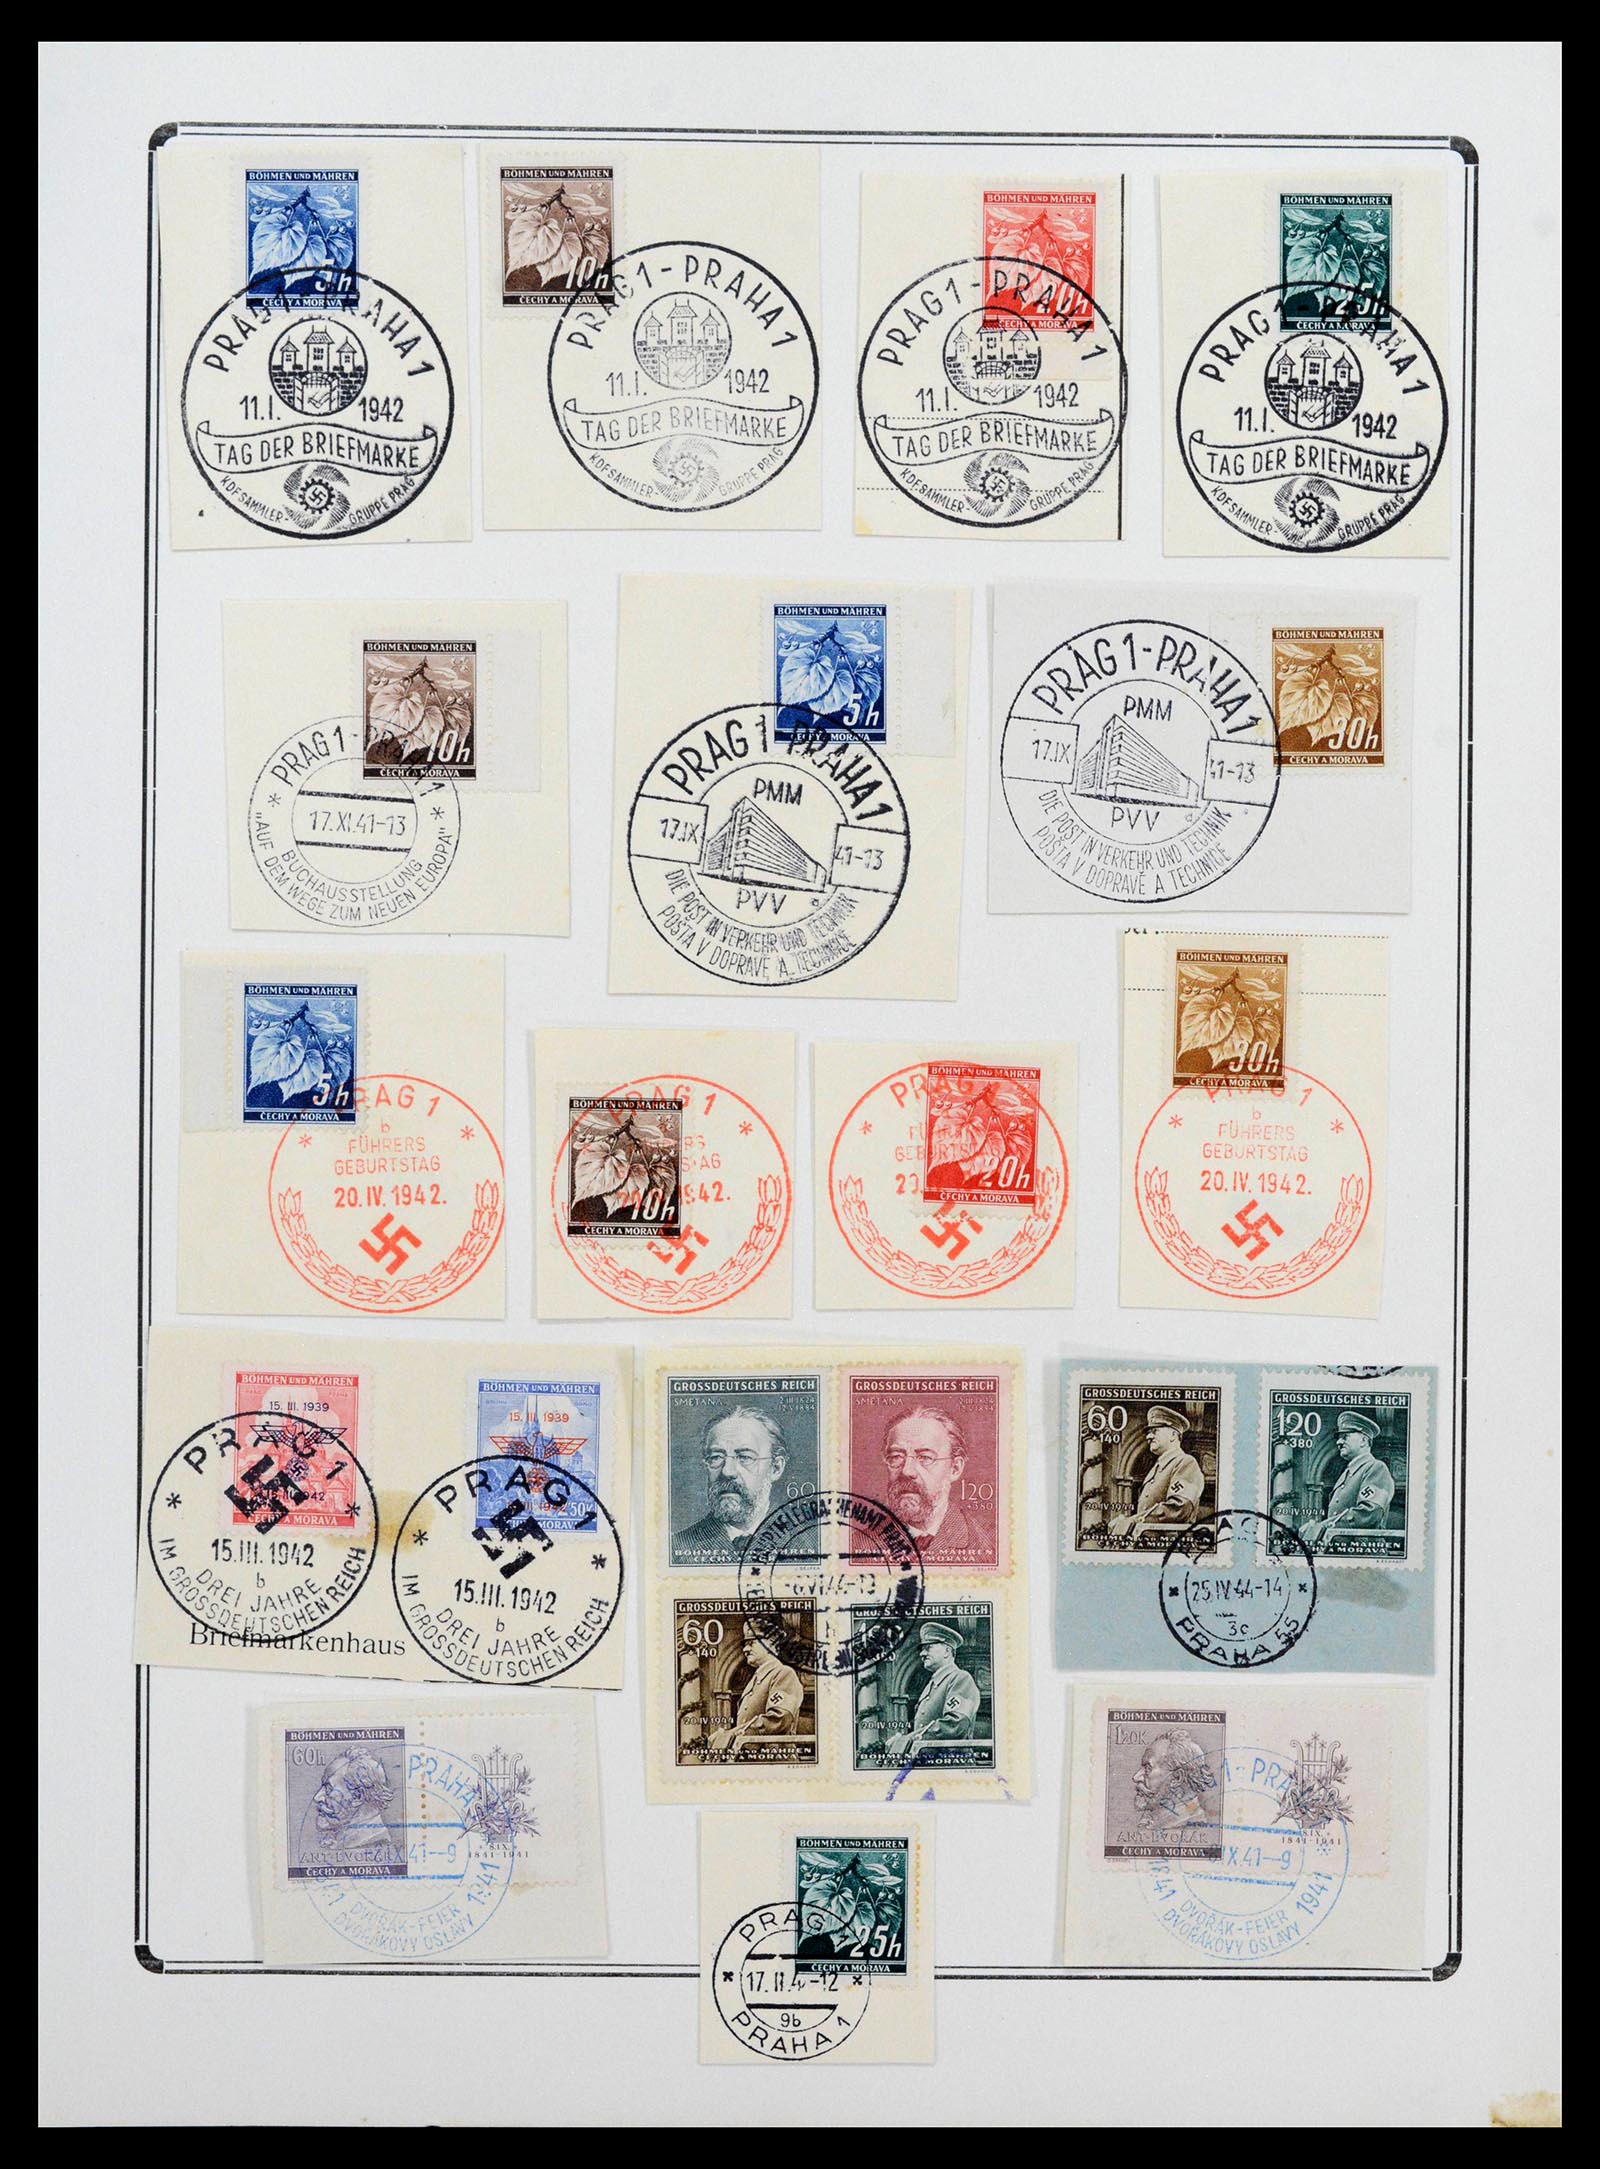 38865 0100 - Stamp collection 38865 German occupation 2nd worldwar 1939-1945.